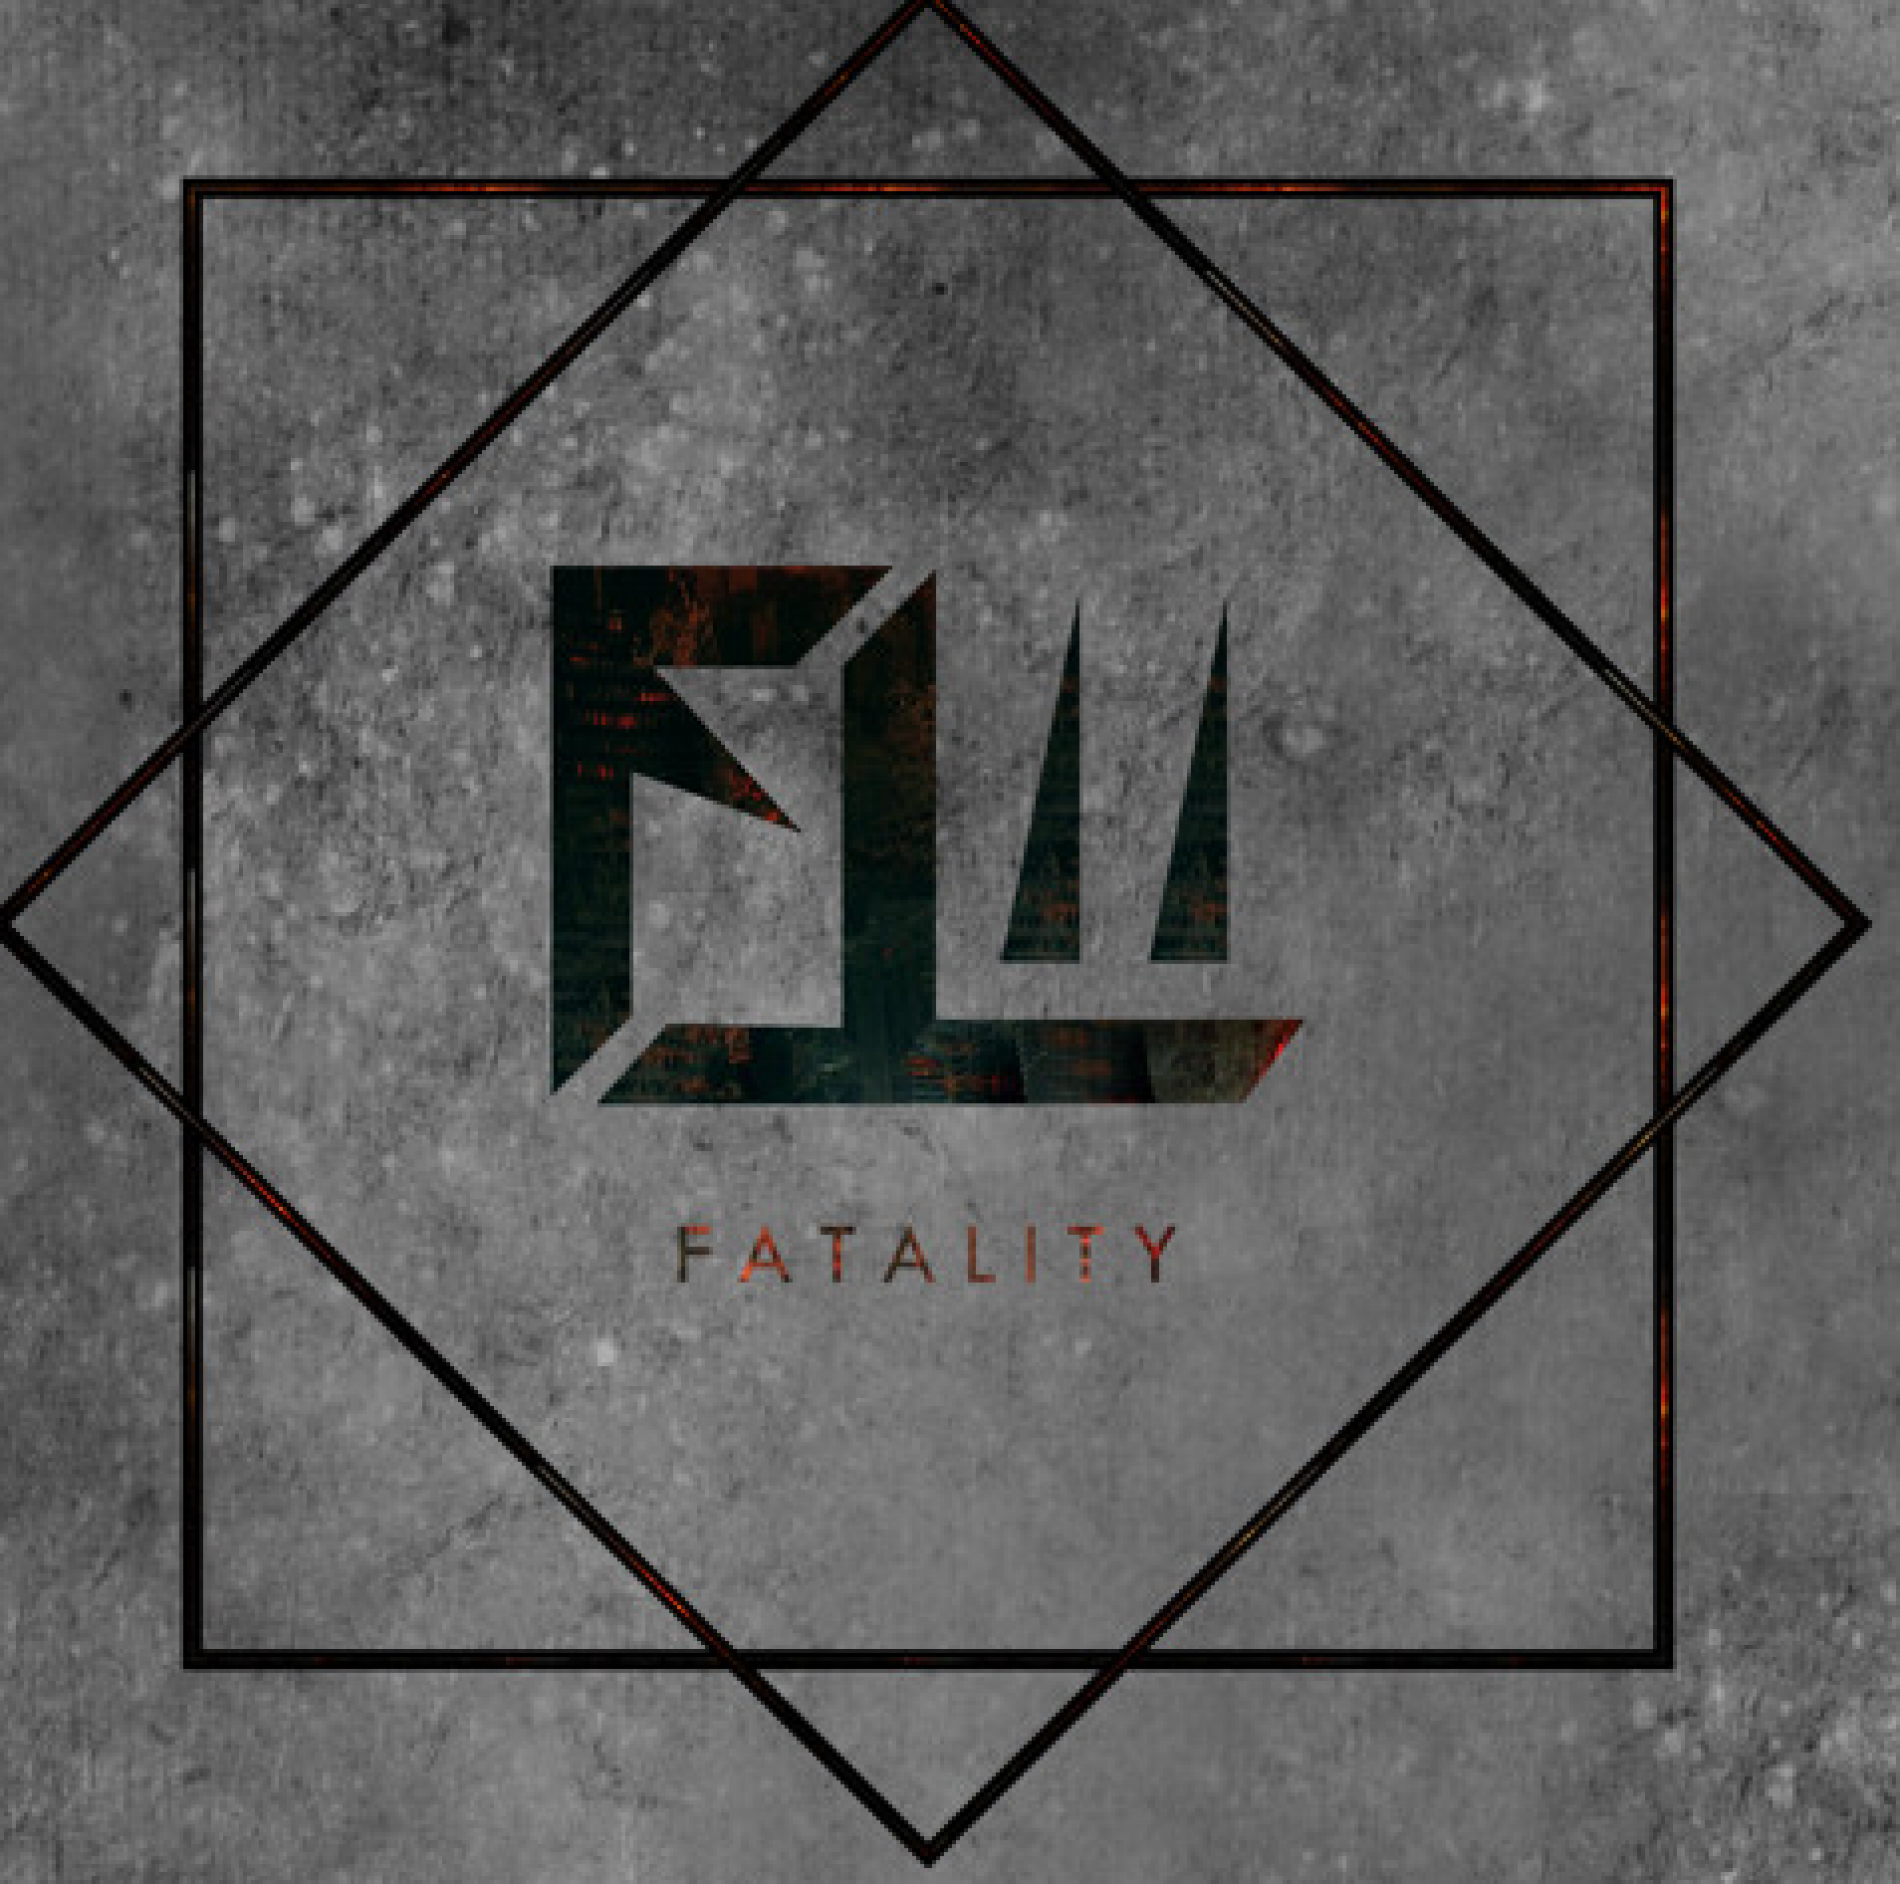 Fatal – Fatality